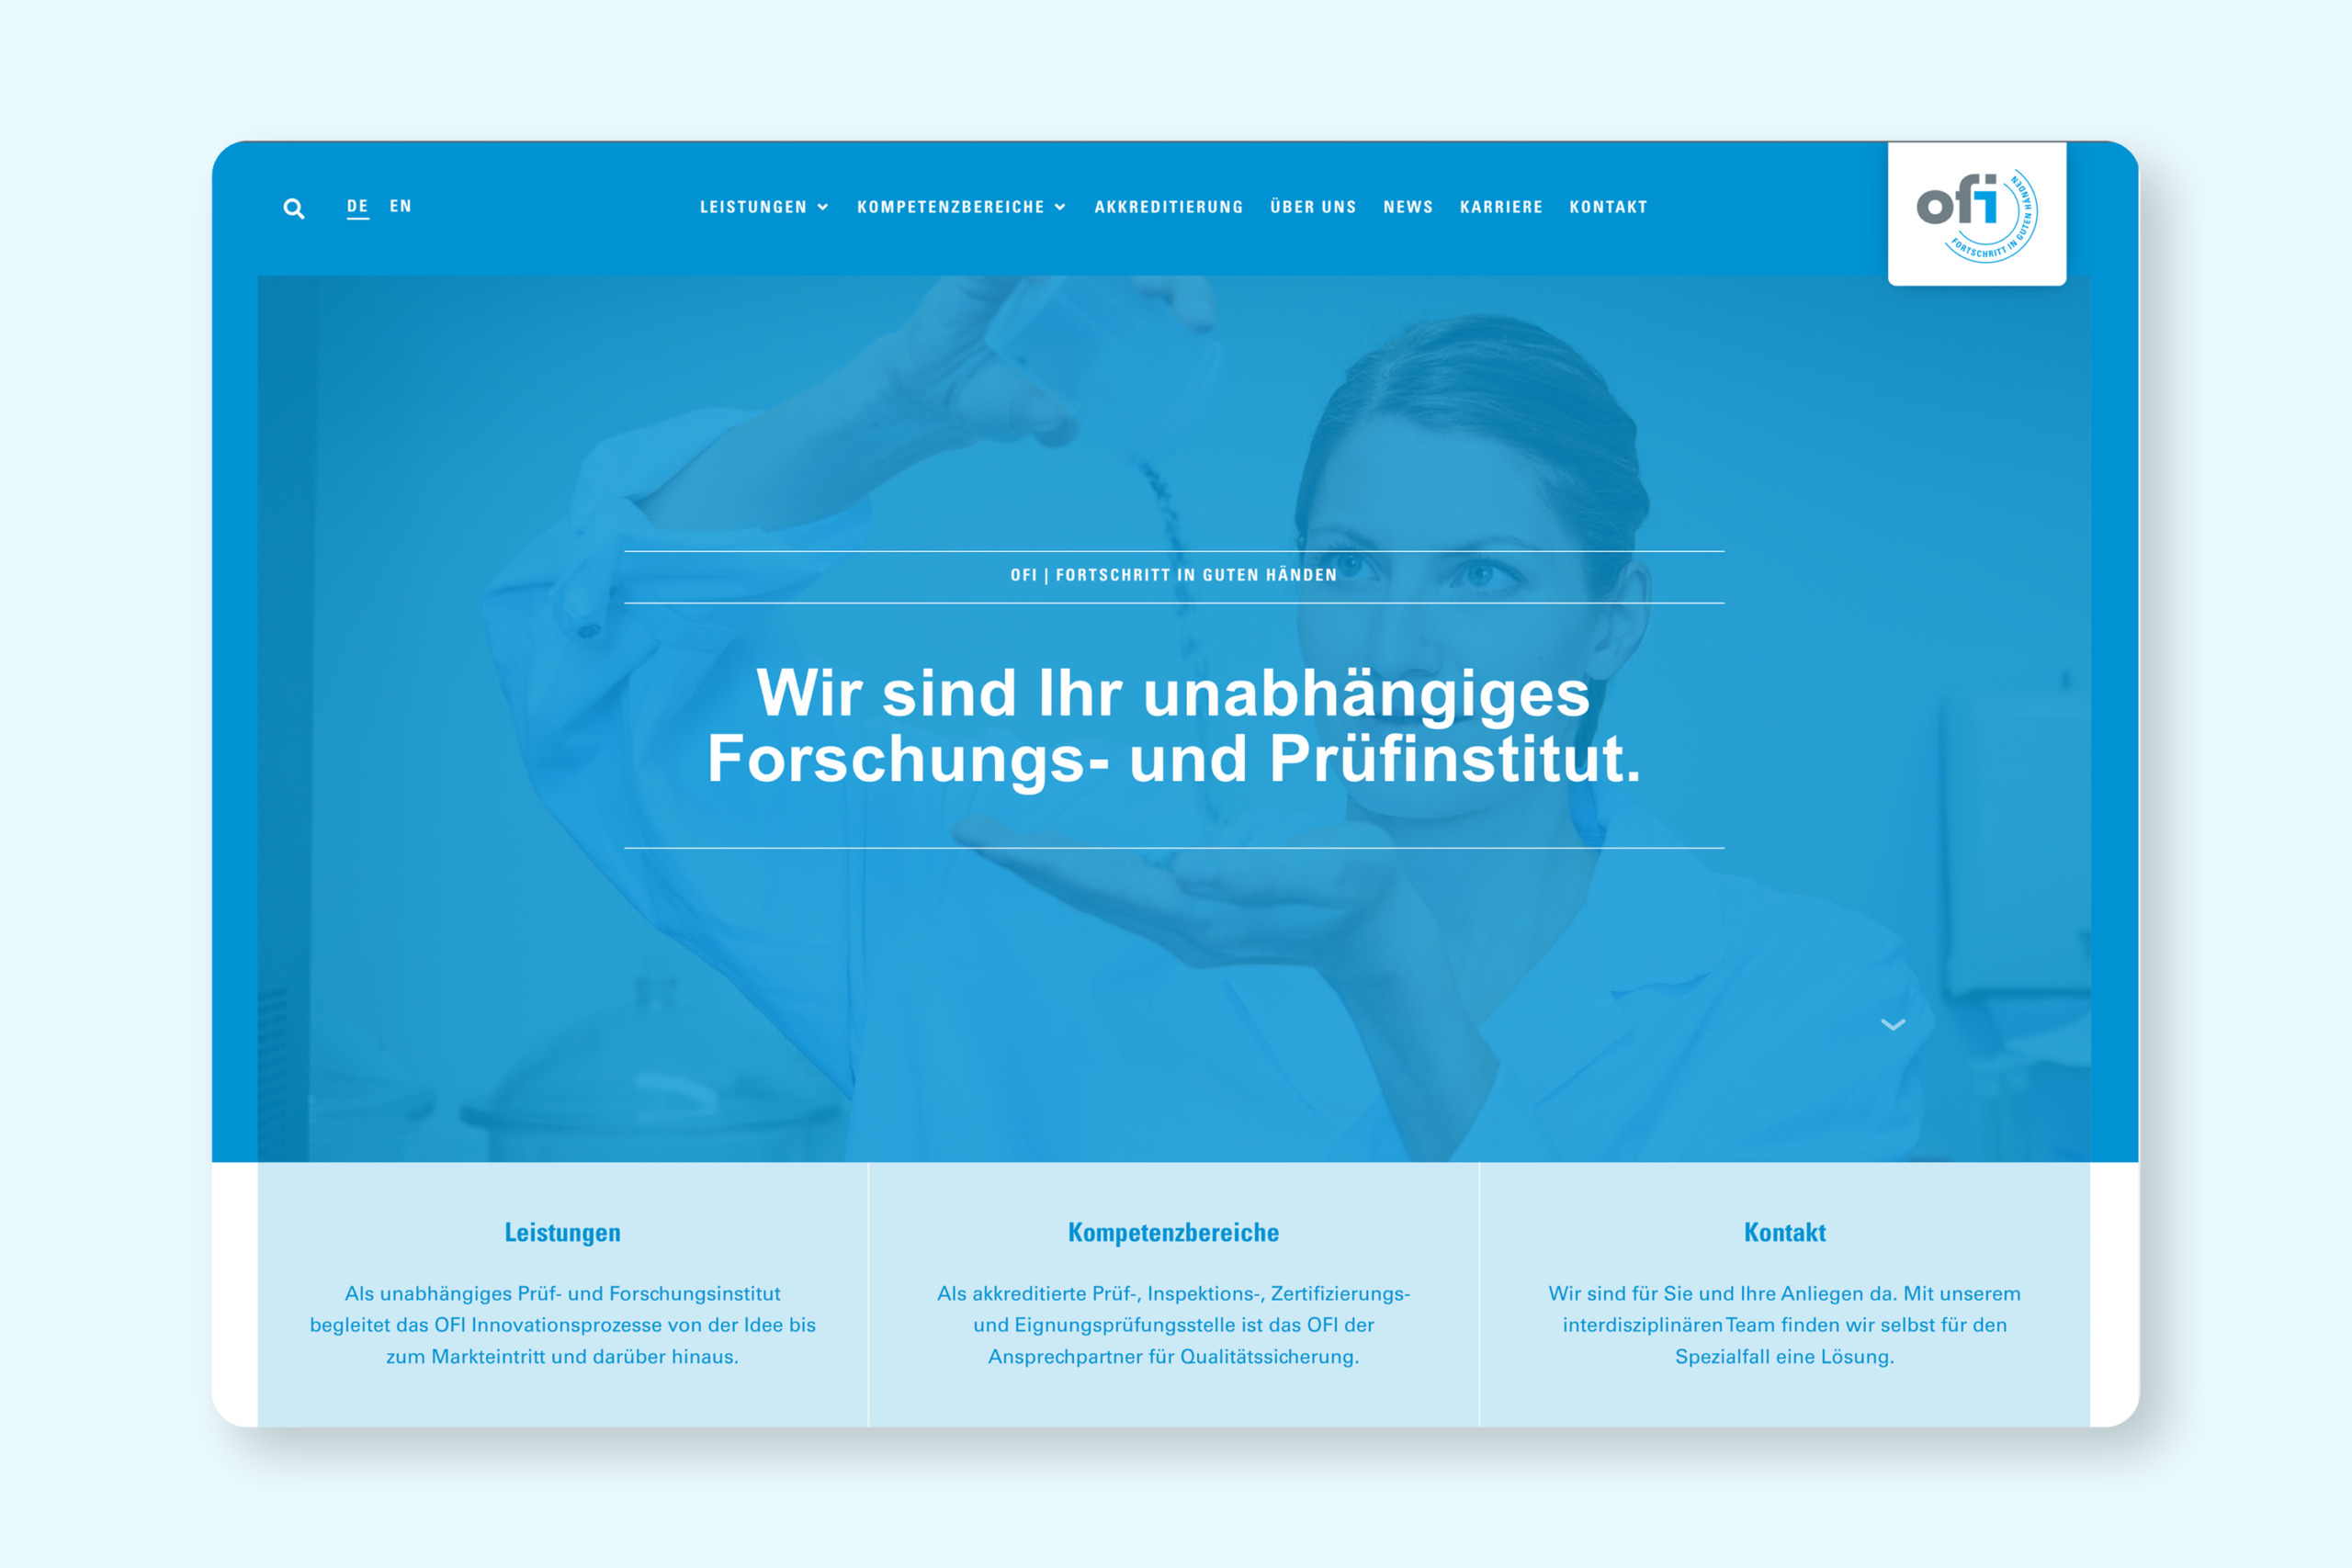 Ein Website-Design für ein Pharmaunternehmen mit Schwerpunkt auf OFI.